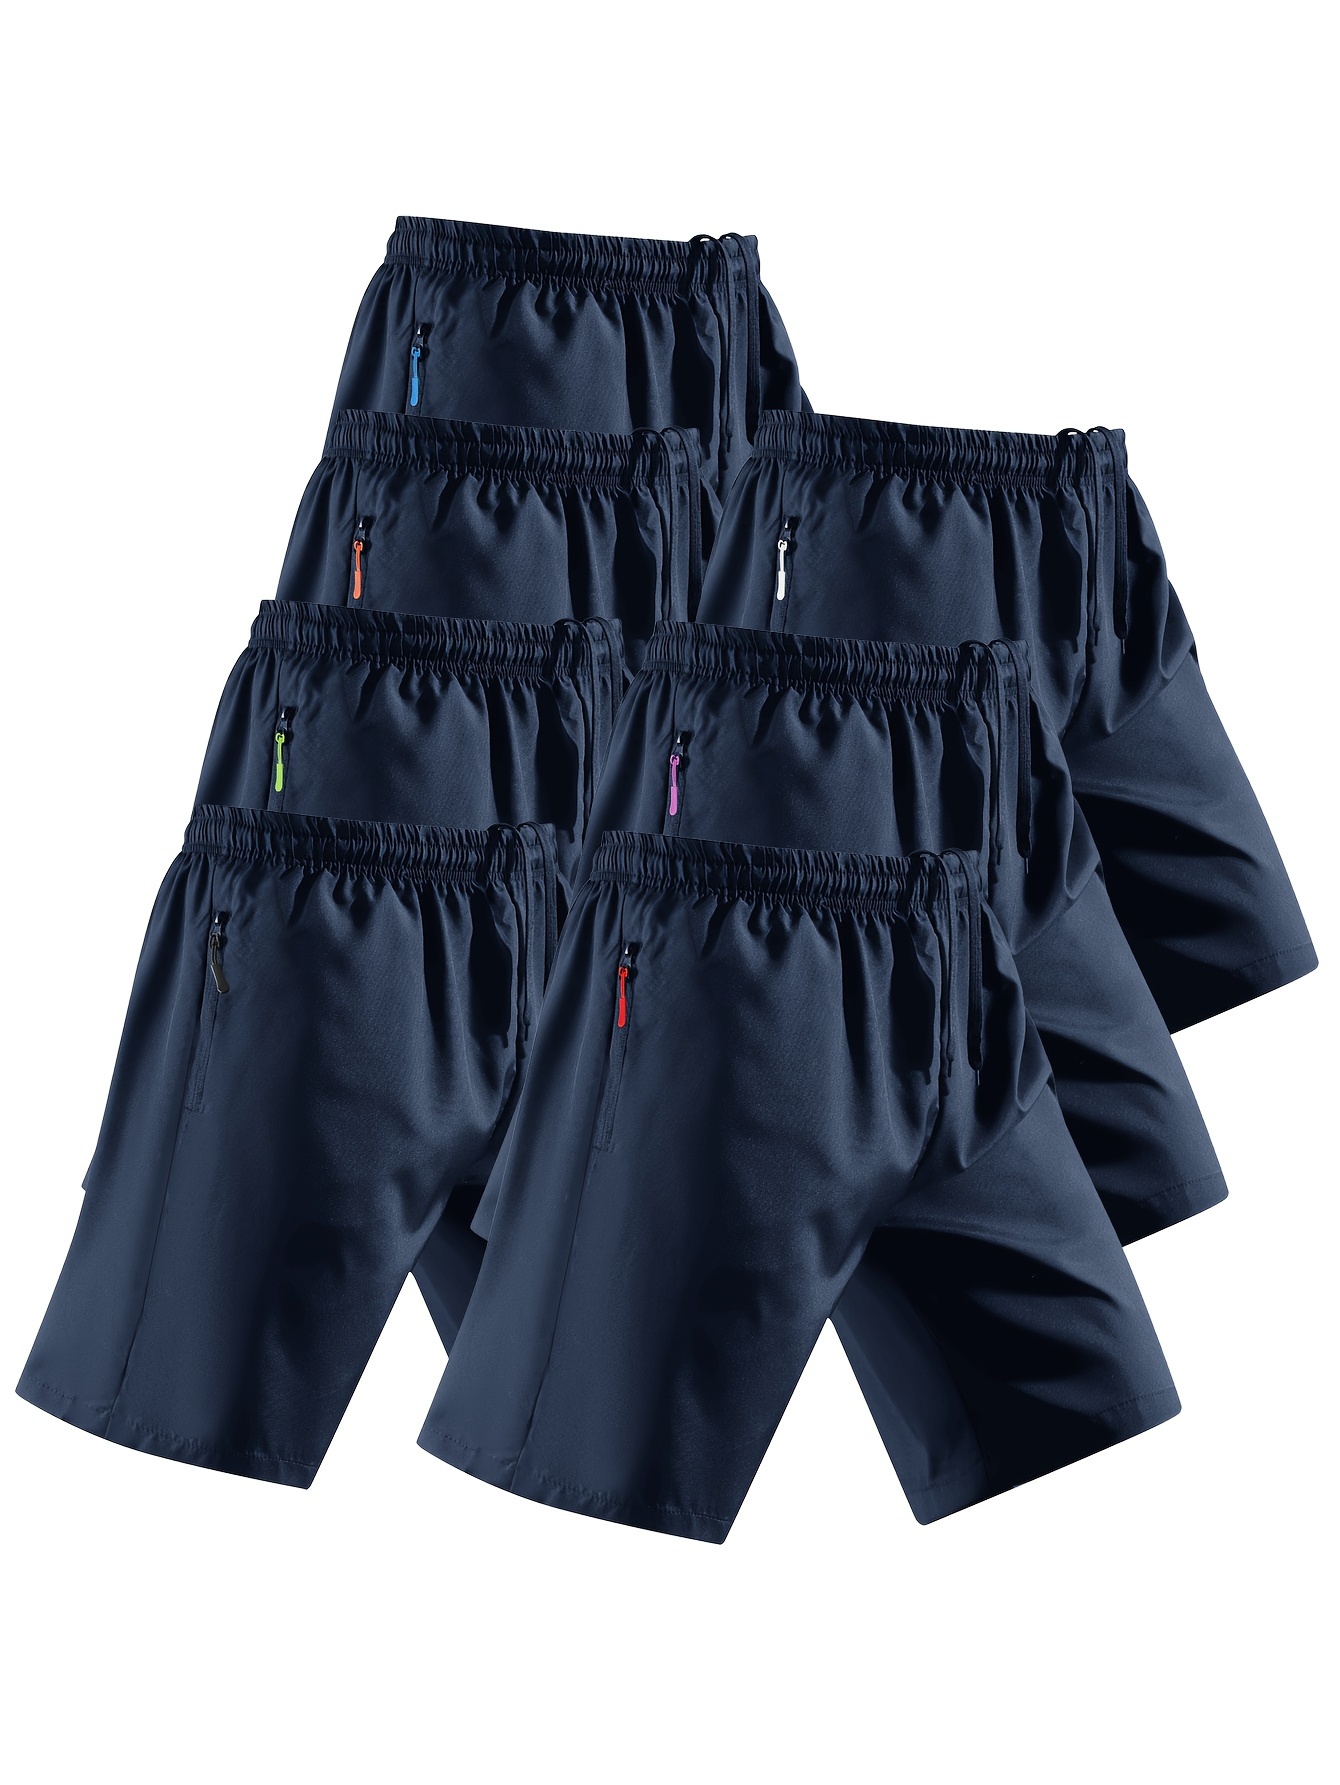 Men's Solid Compression Shorts Zipper Pocket Athletic Quick - Temu